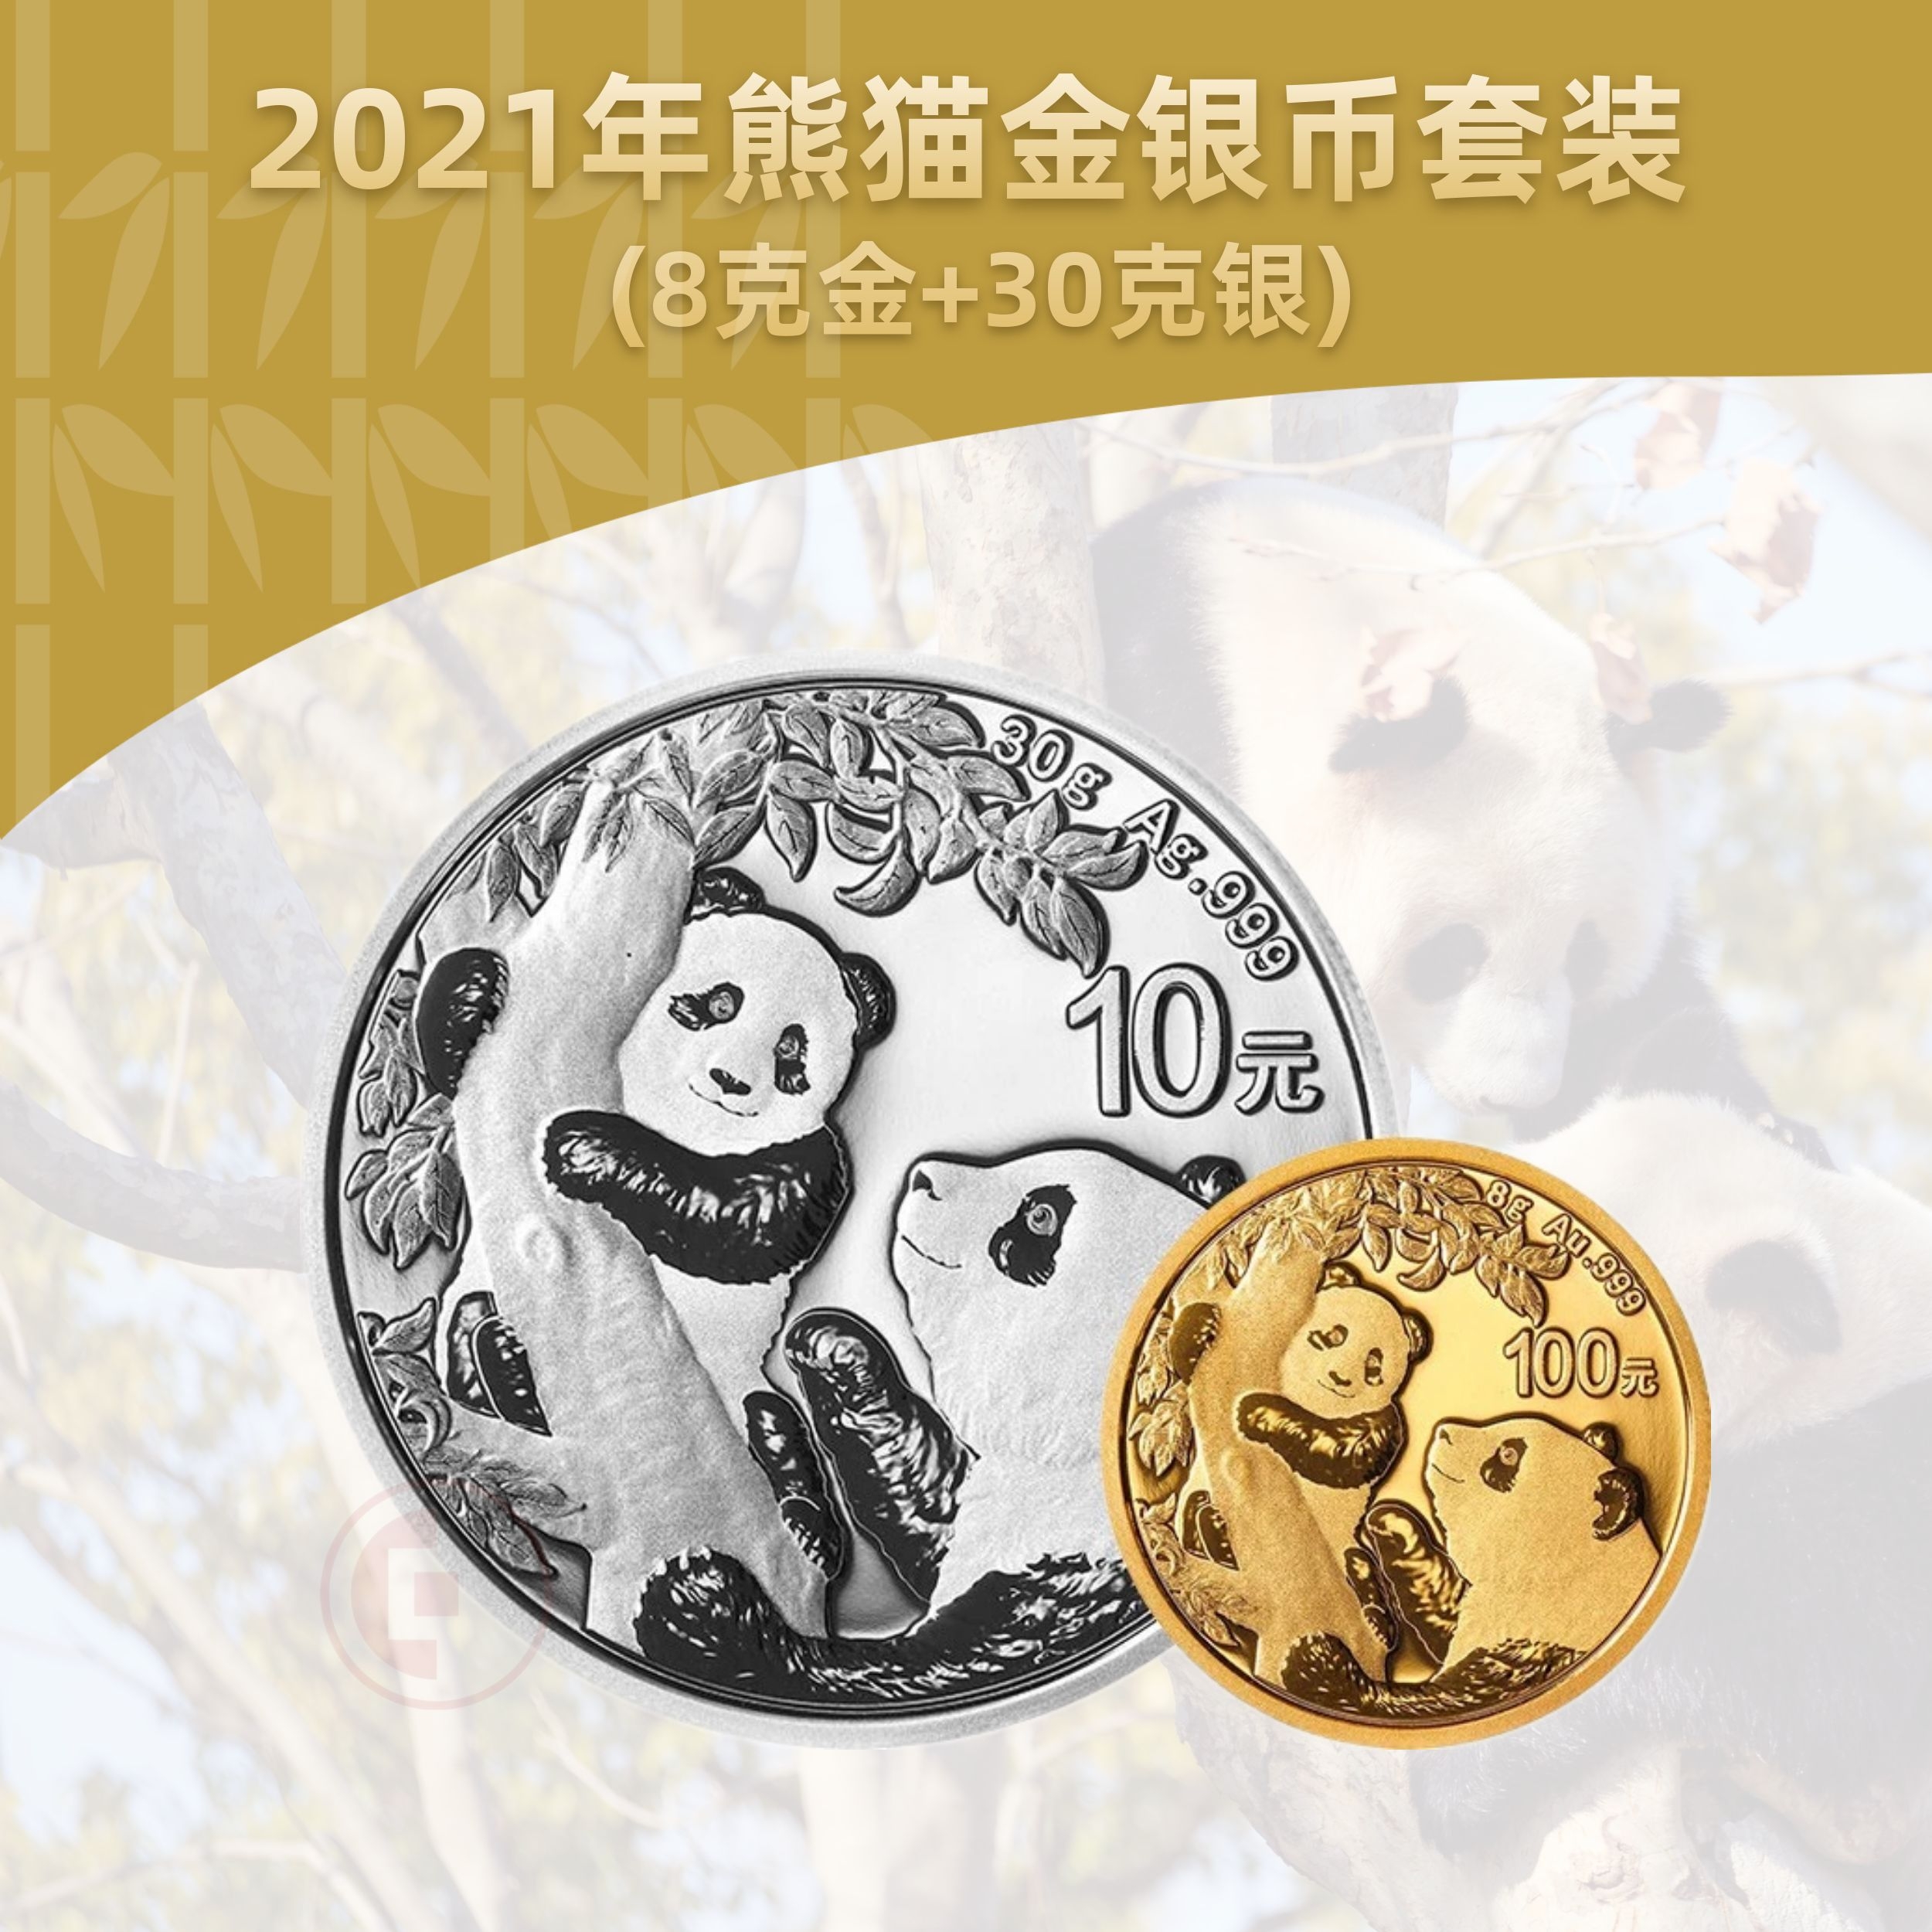 2021熊猫金银币套装  (8克金+30克银)